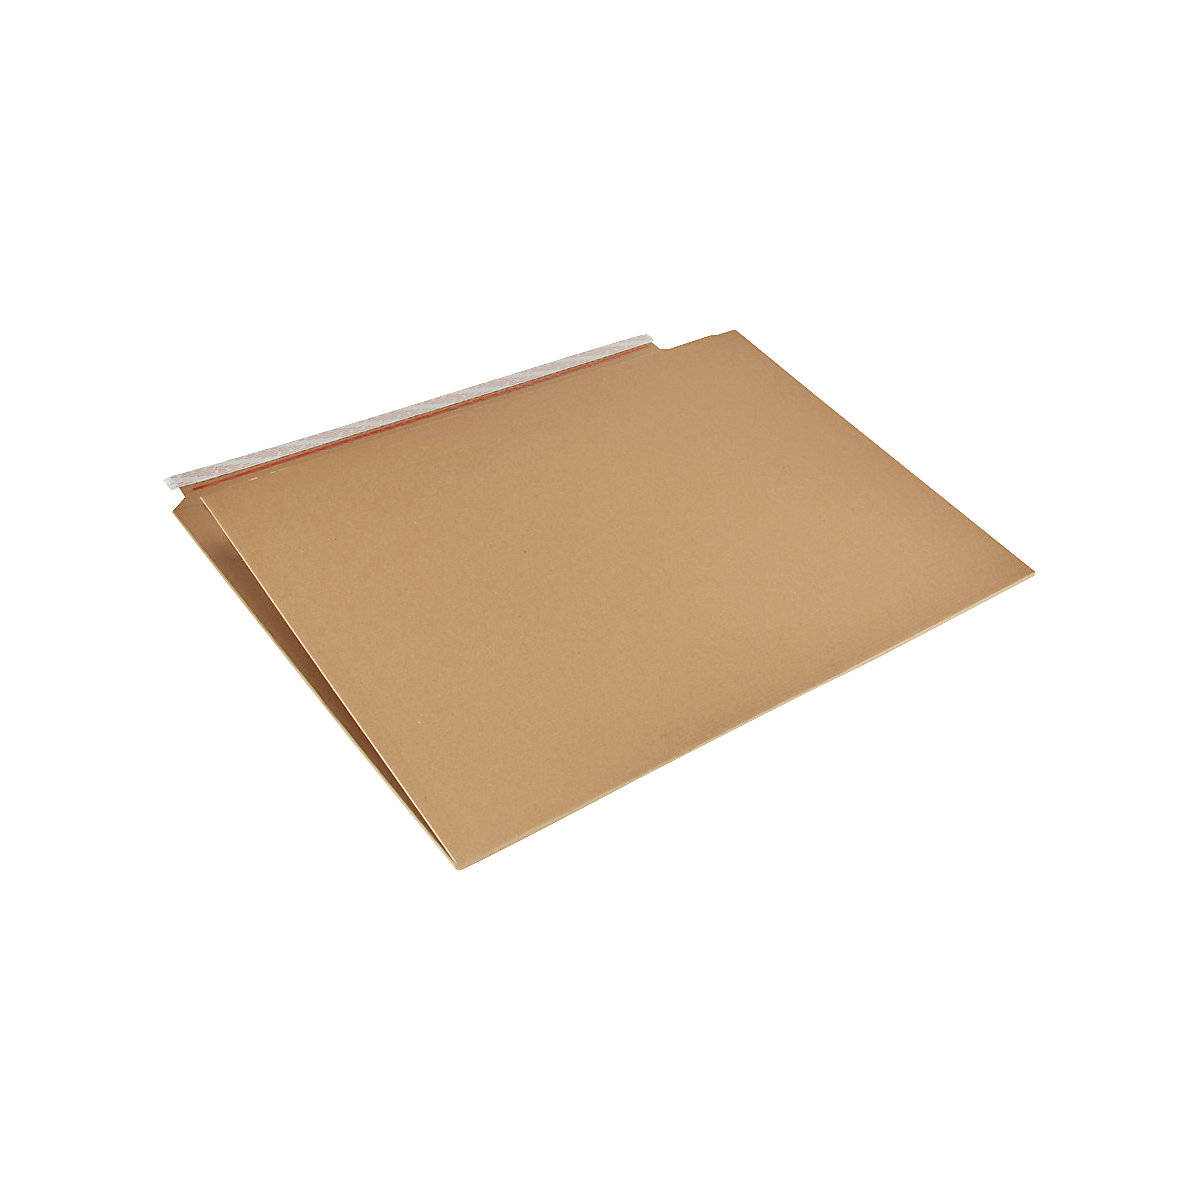 Imballaggio per libri Multistar – flow, marrone, lungh. x largh. 820 x 620 mm, a partire da 25 pz.-2